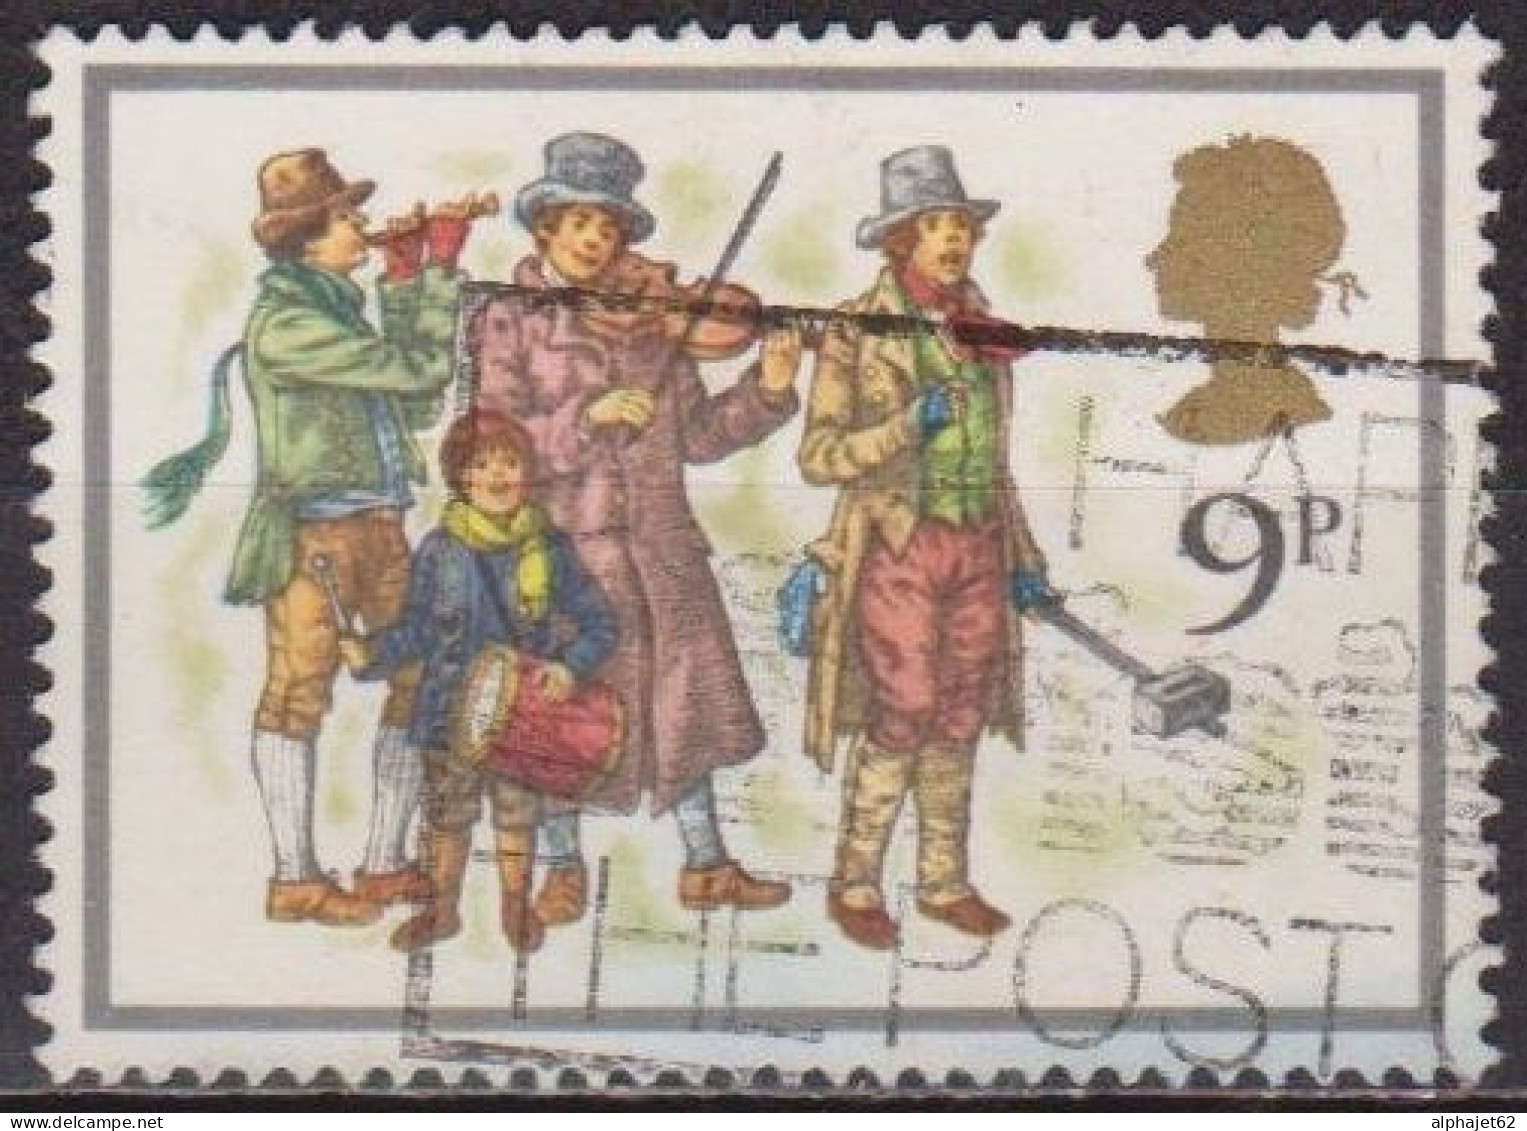 Noel - 1978 - GRANDE BRETAGNE - Musiciens Chanteur - N° 877 - Used Stamps